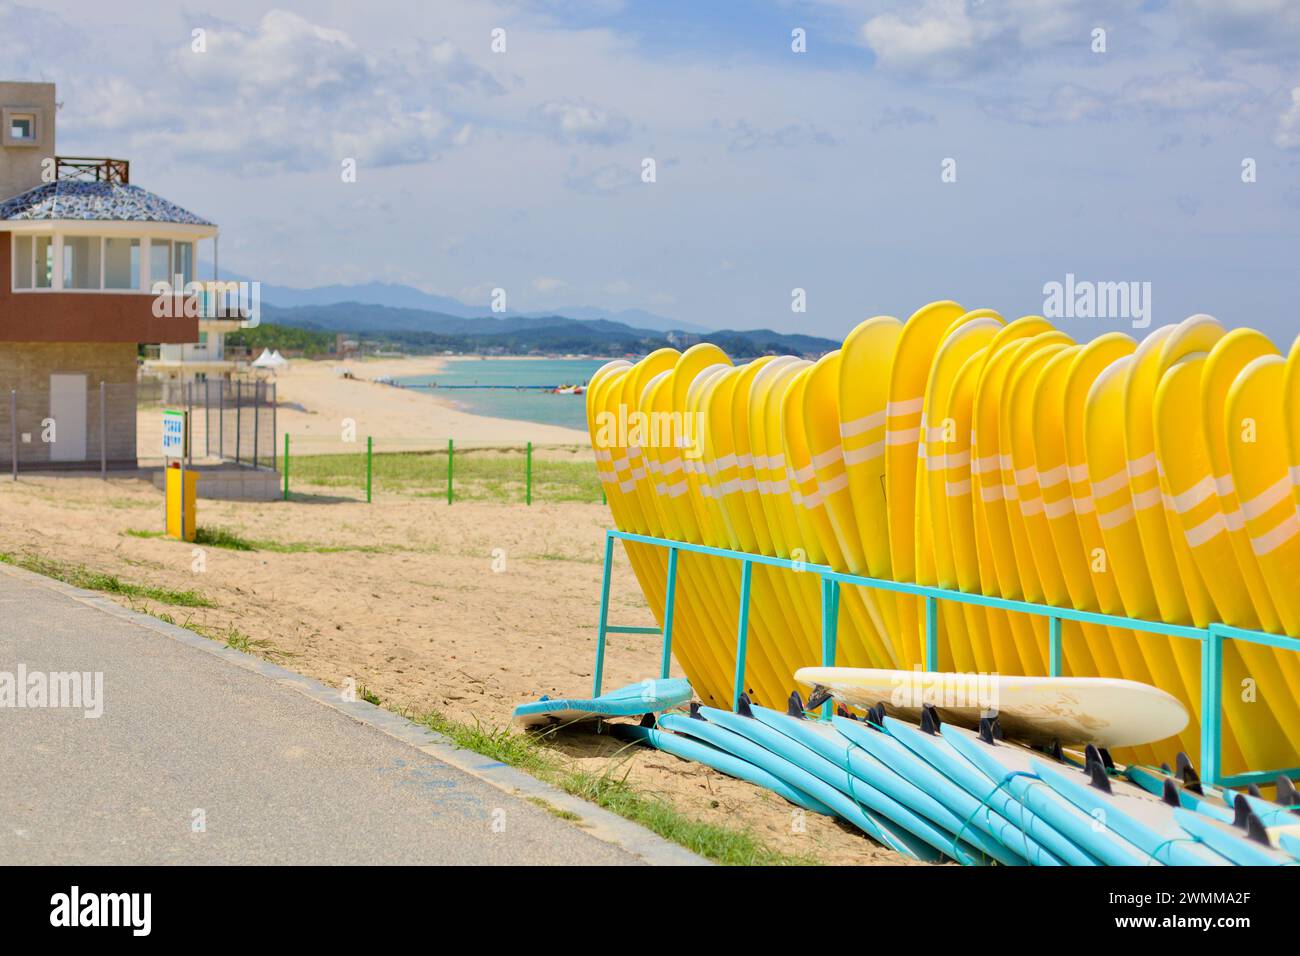 Yangyang County, Südkorea - 30. Juli 2019: Gelbe Surfbretter stehen aufrecht in einem Stift am Hyangho Beach, darunter liegen blaue Surfbretter und ein sm Stockfoto